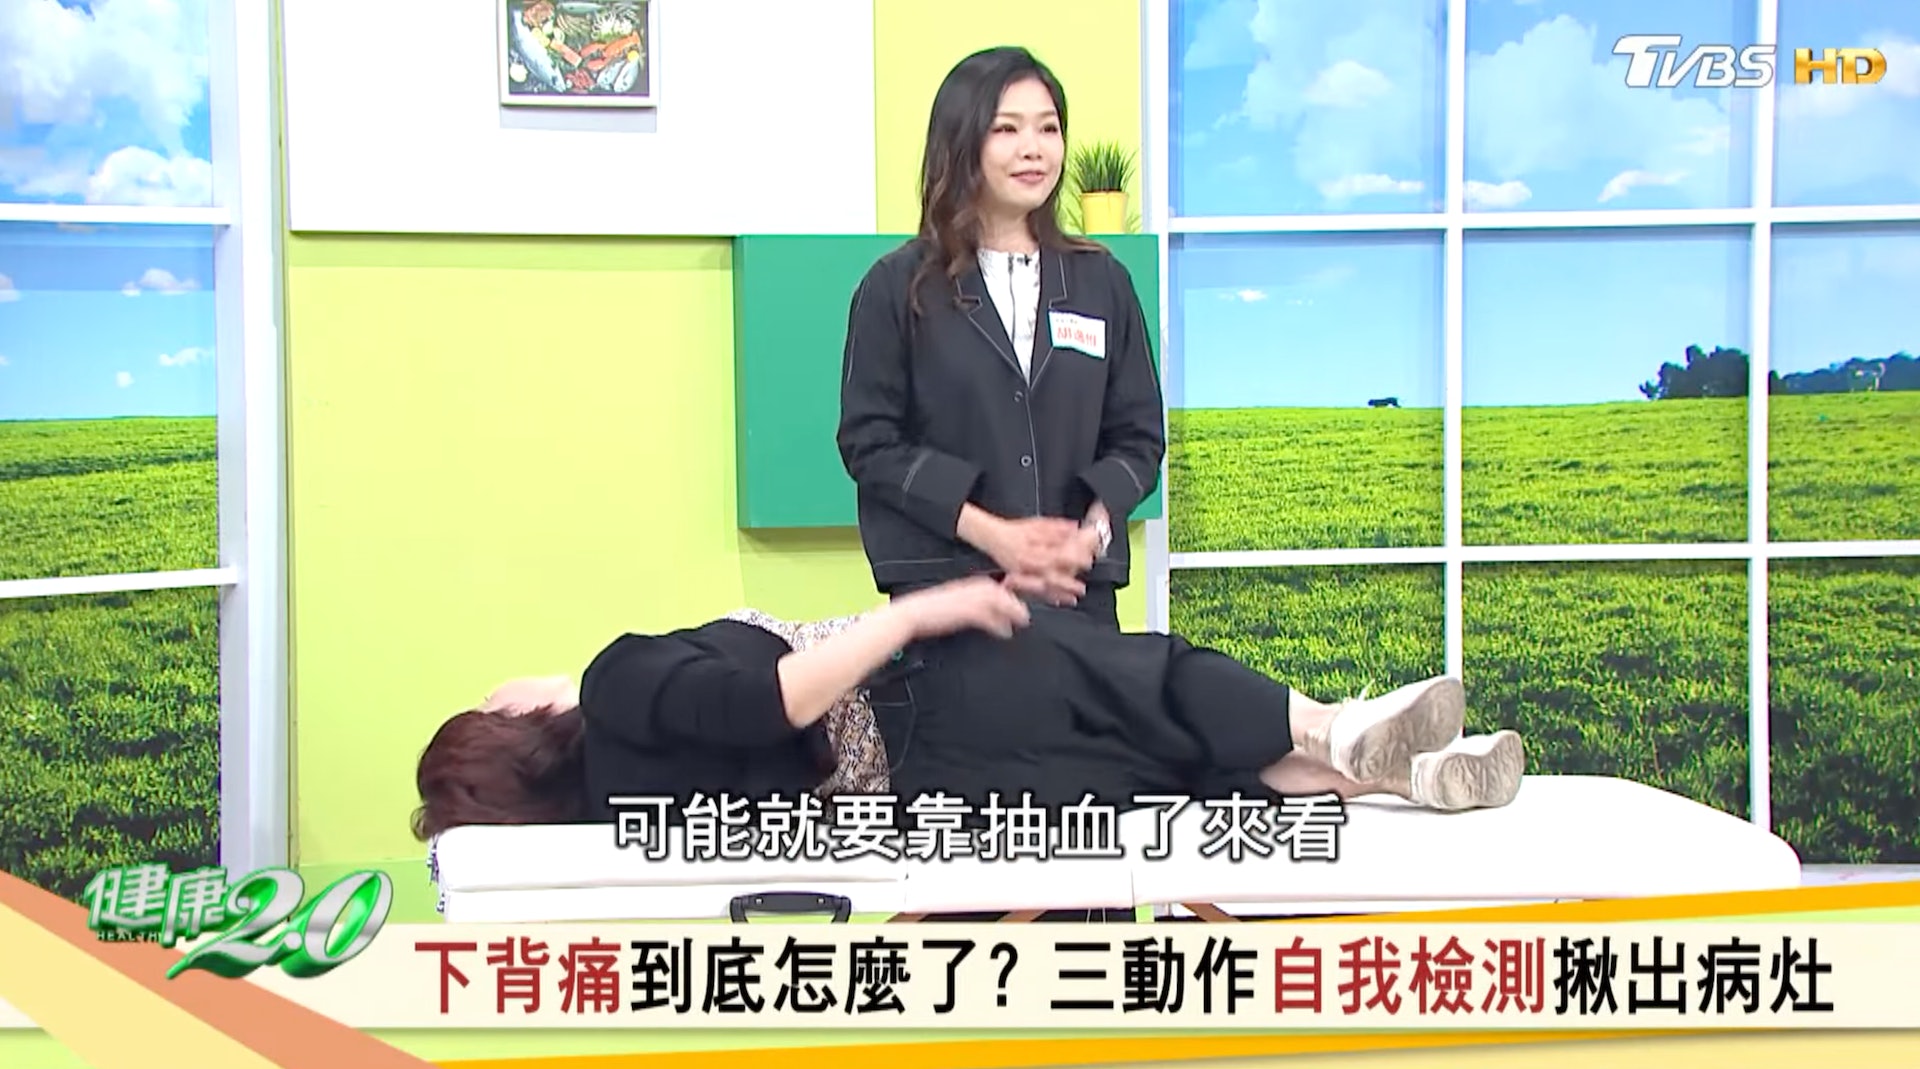 骨科副主任 王偉勛醫師指如果腰痛建議求醫（截自YouTube@健康2.0《這種下背痛不能等 馬尾症候群影響解尿.排便.性功能》）